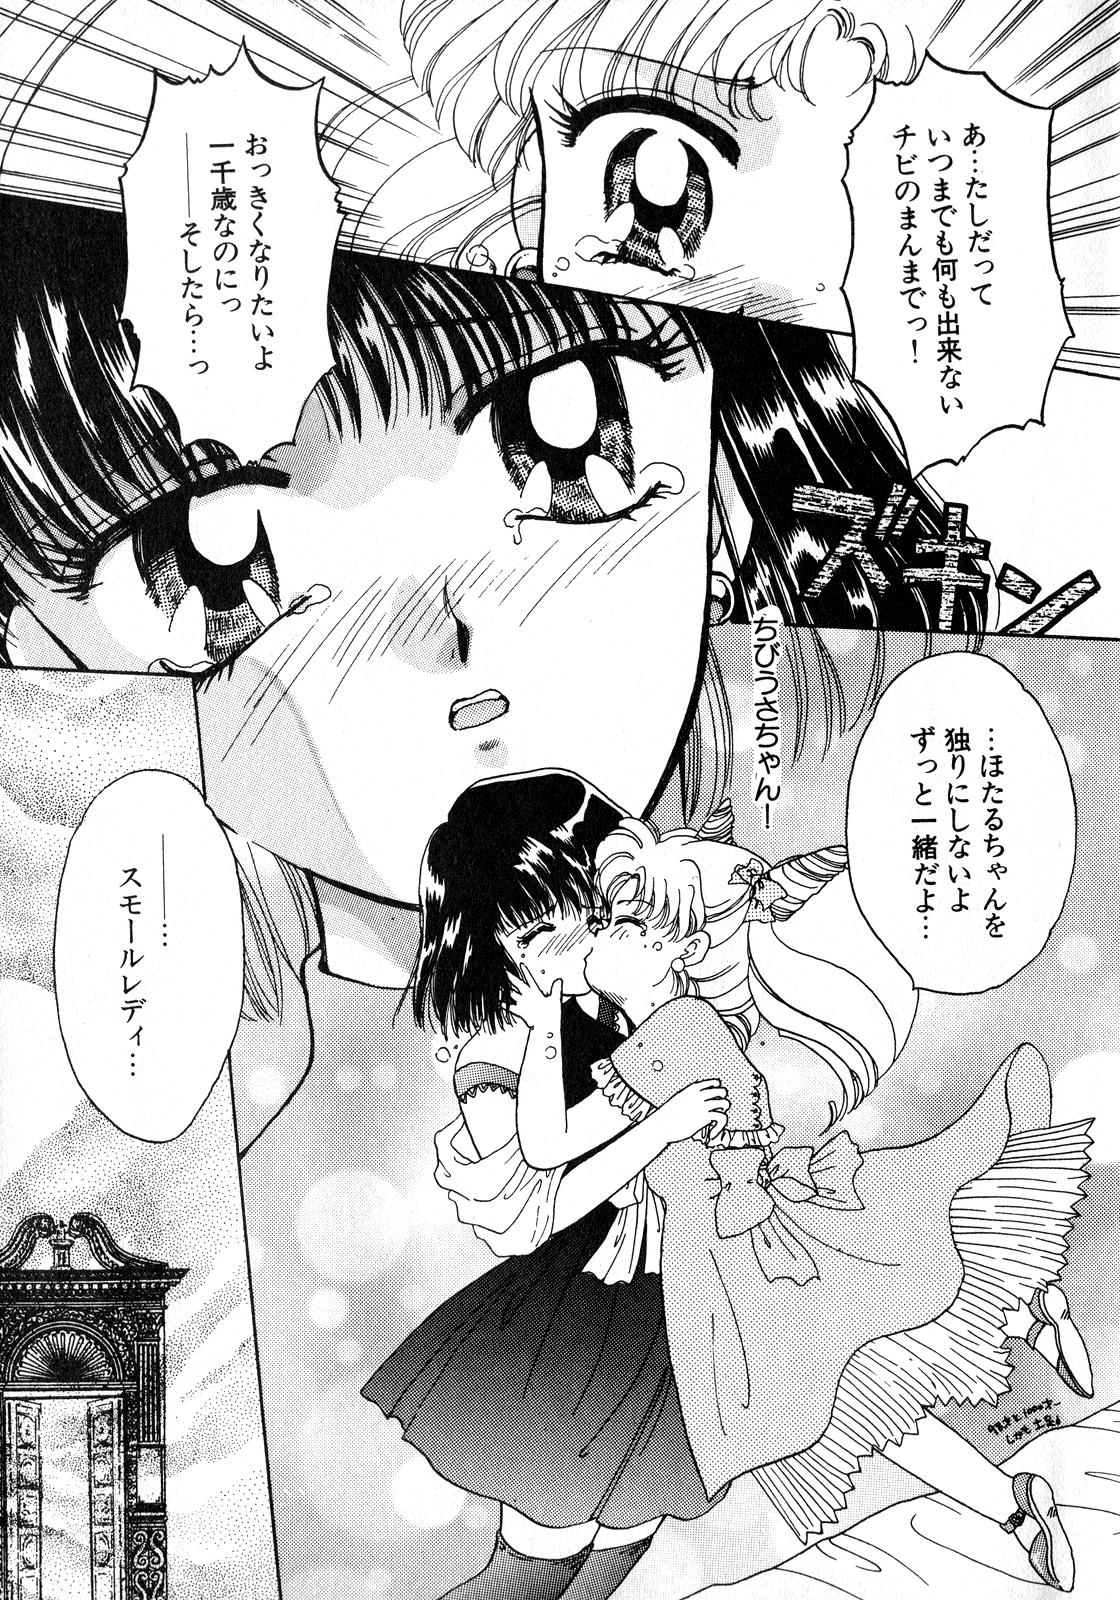 Jock Lunatic Party 8 - Sailor moon Gay Youngmen - Page 8